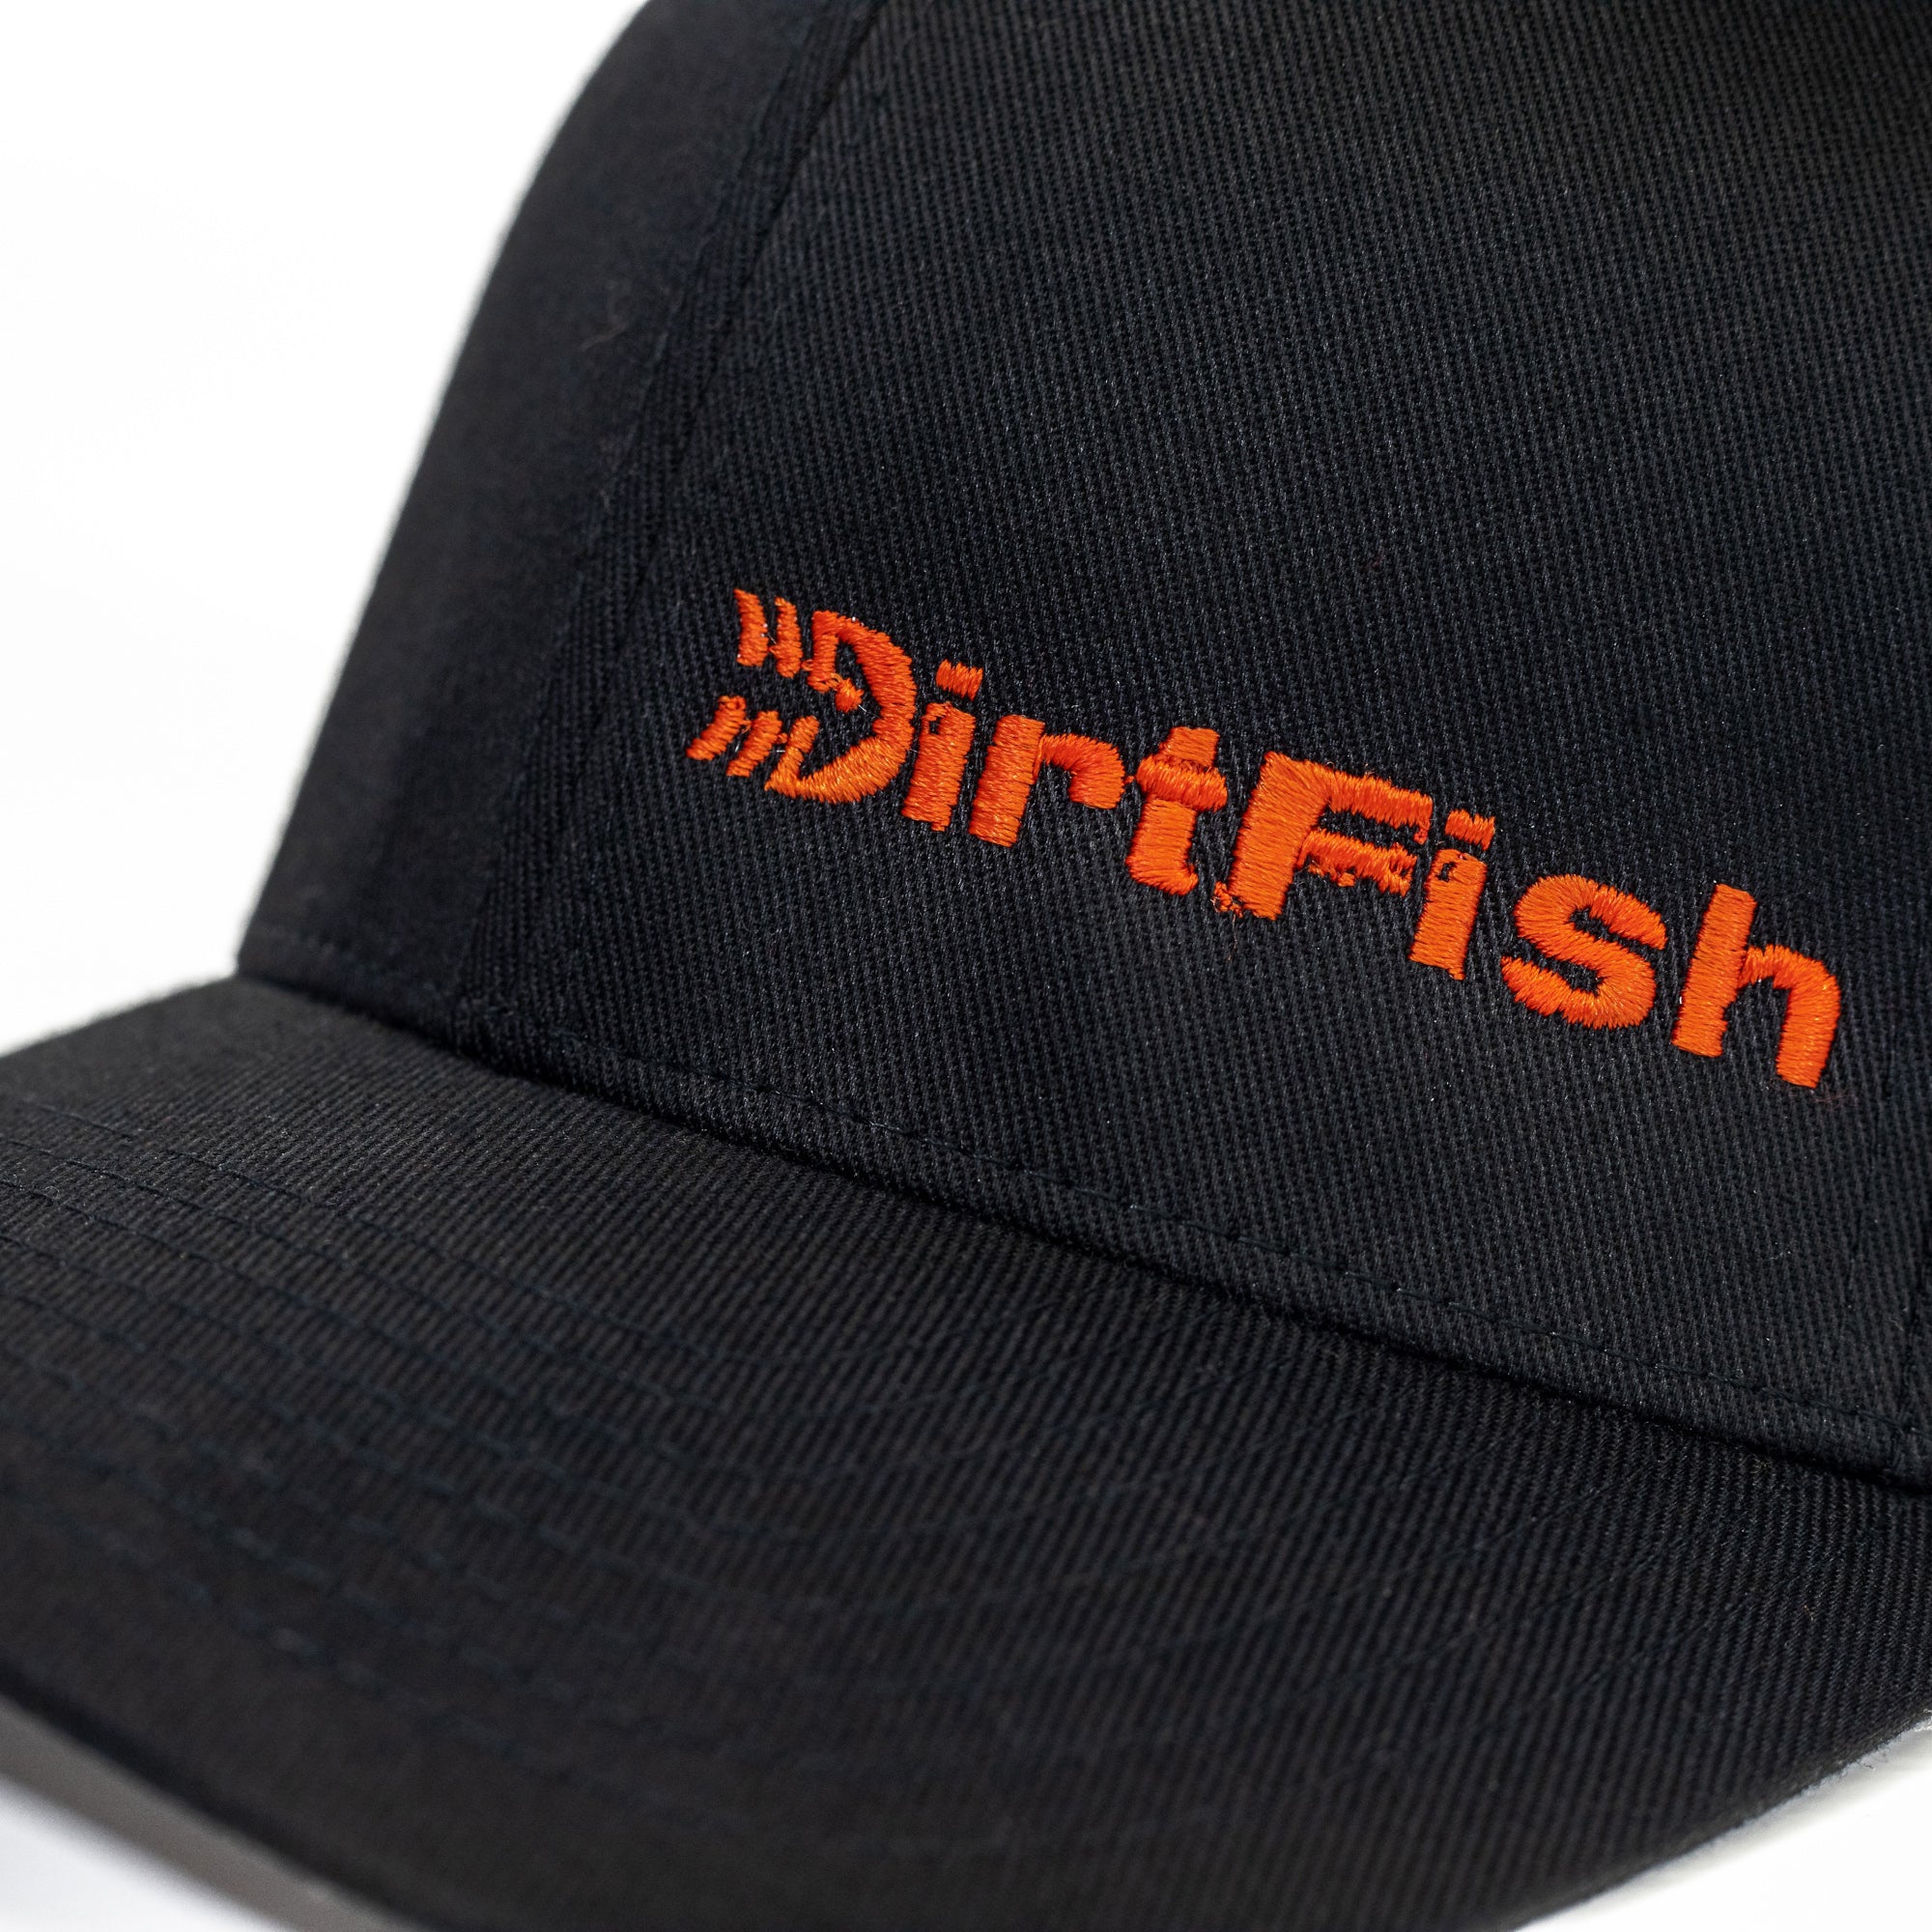 Understeer Flex-fit - Shop DirtFish Hat